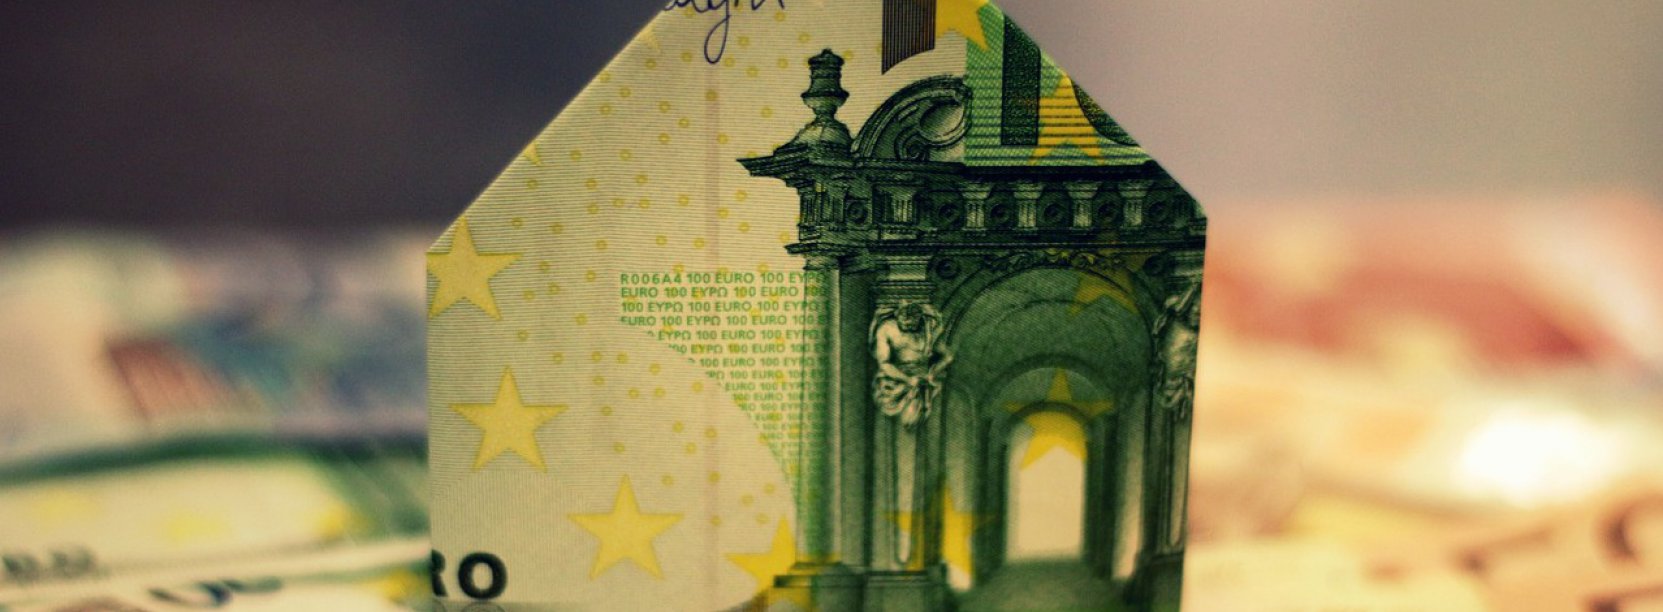 Banknot eur złozony w domek stojący na leżacych banknotach